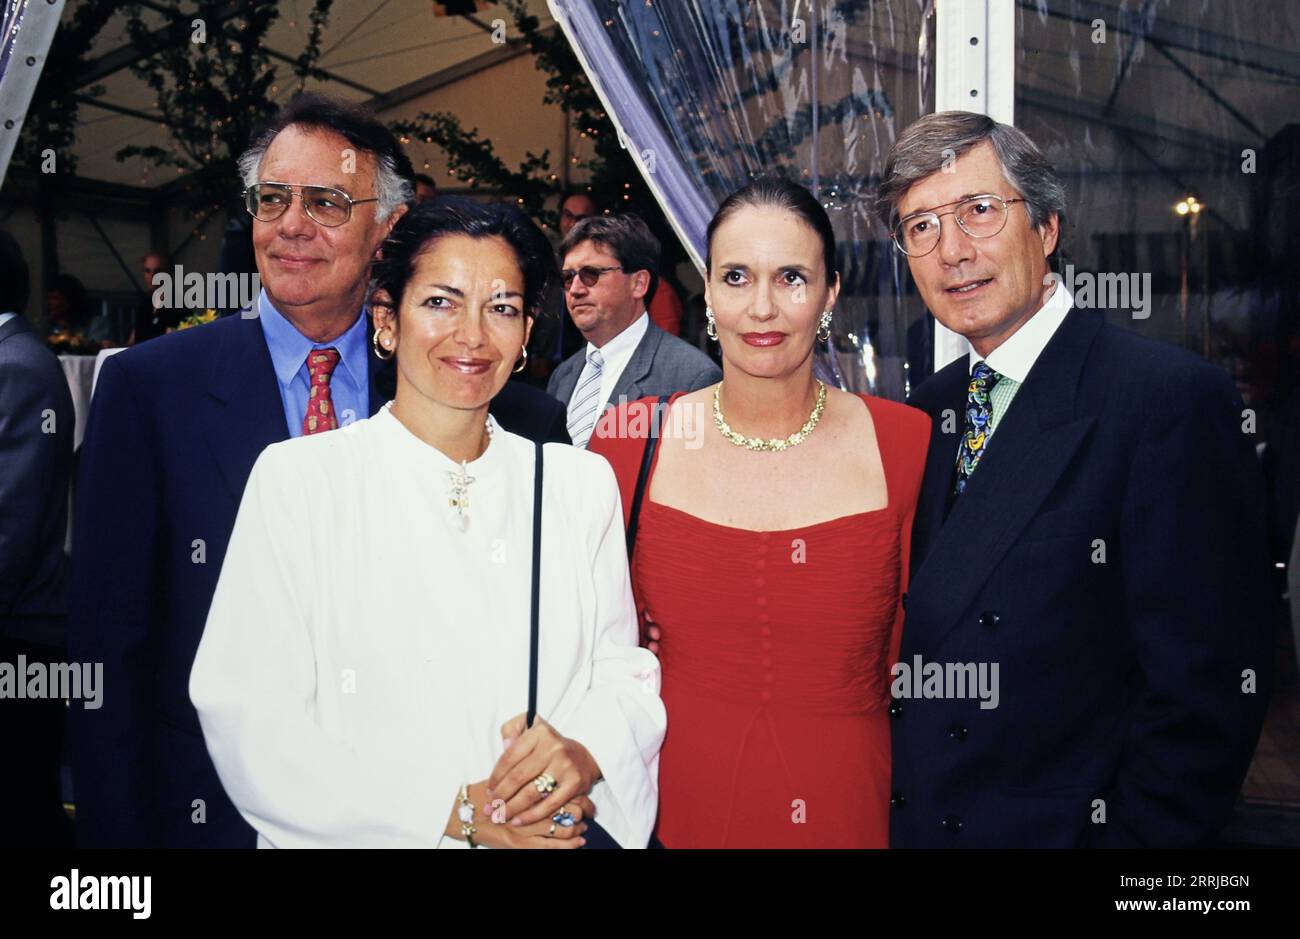 Schauspieler Klausjürgen Wussow mit Ehefrau Yvonne Viehöfer, daneben Schauspieler Christian Wolff mit Ehefrau Marina, circa 1993. Stock Photo